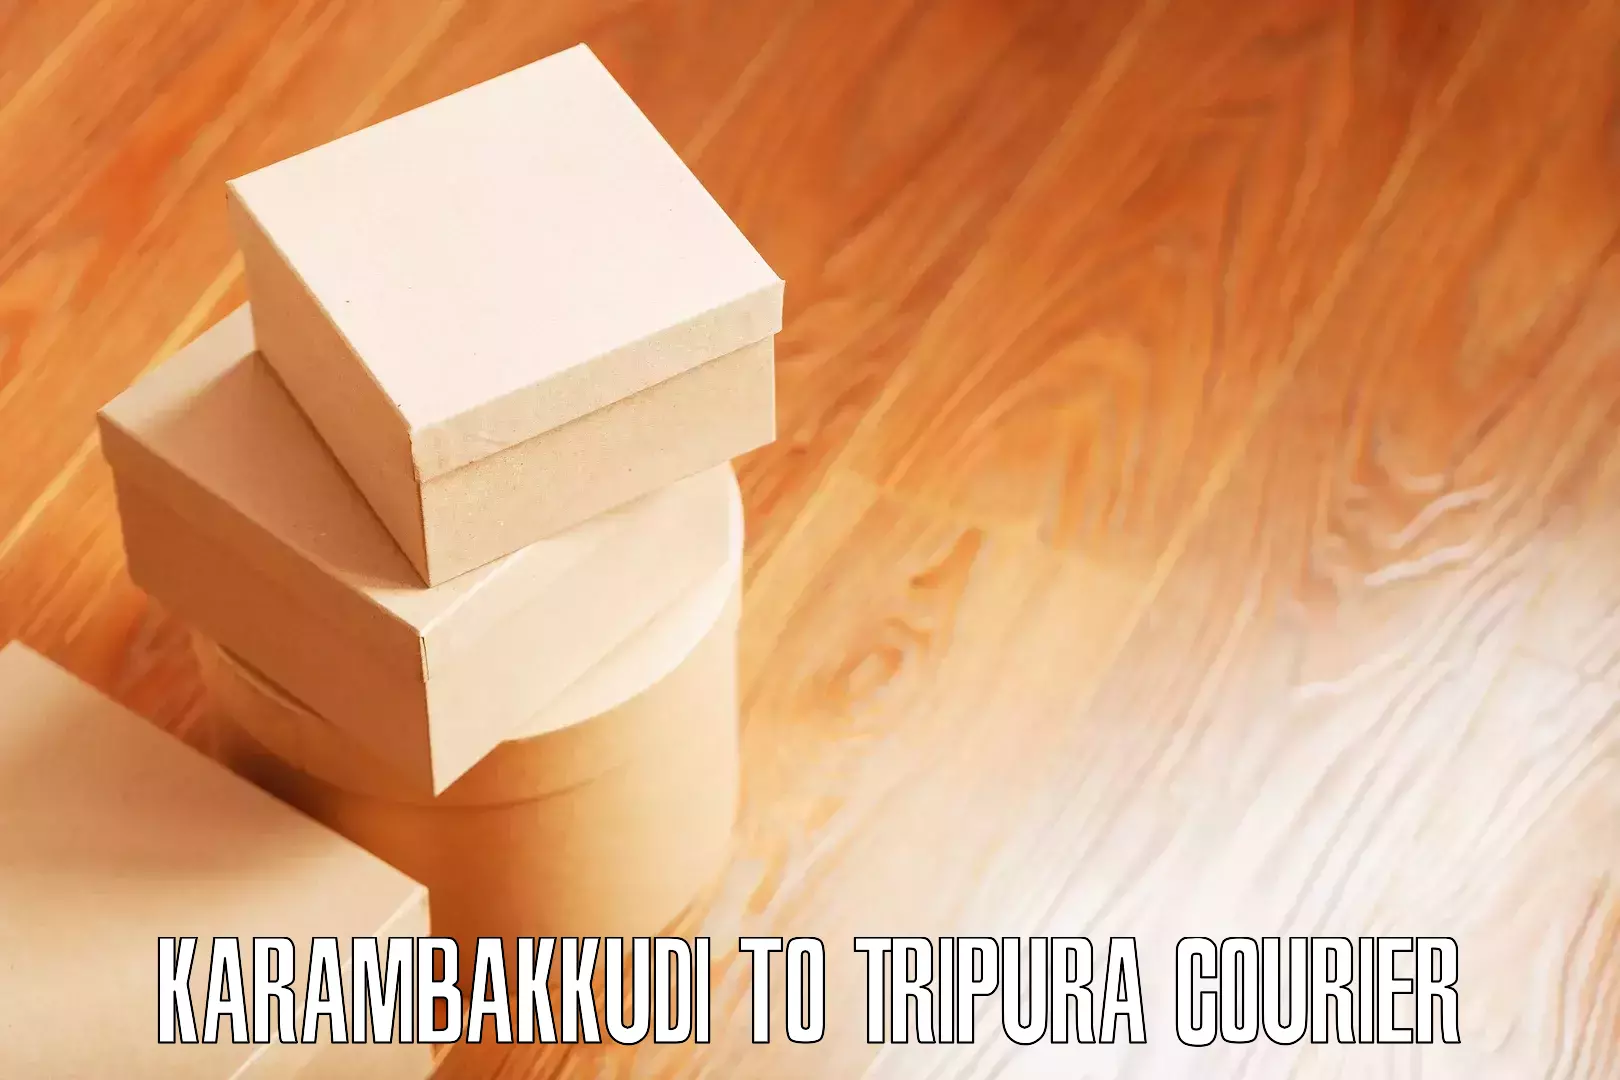 Furniture moving plans Karambakkudi to Udaipur Tripura